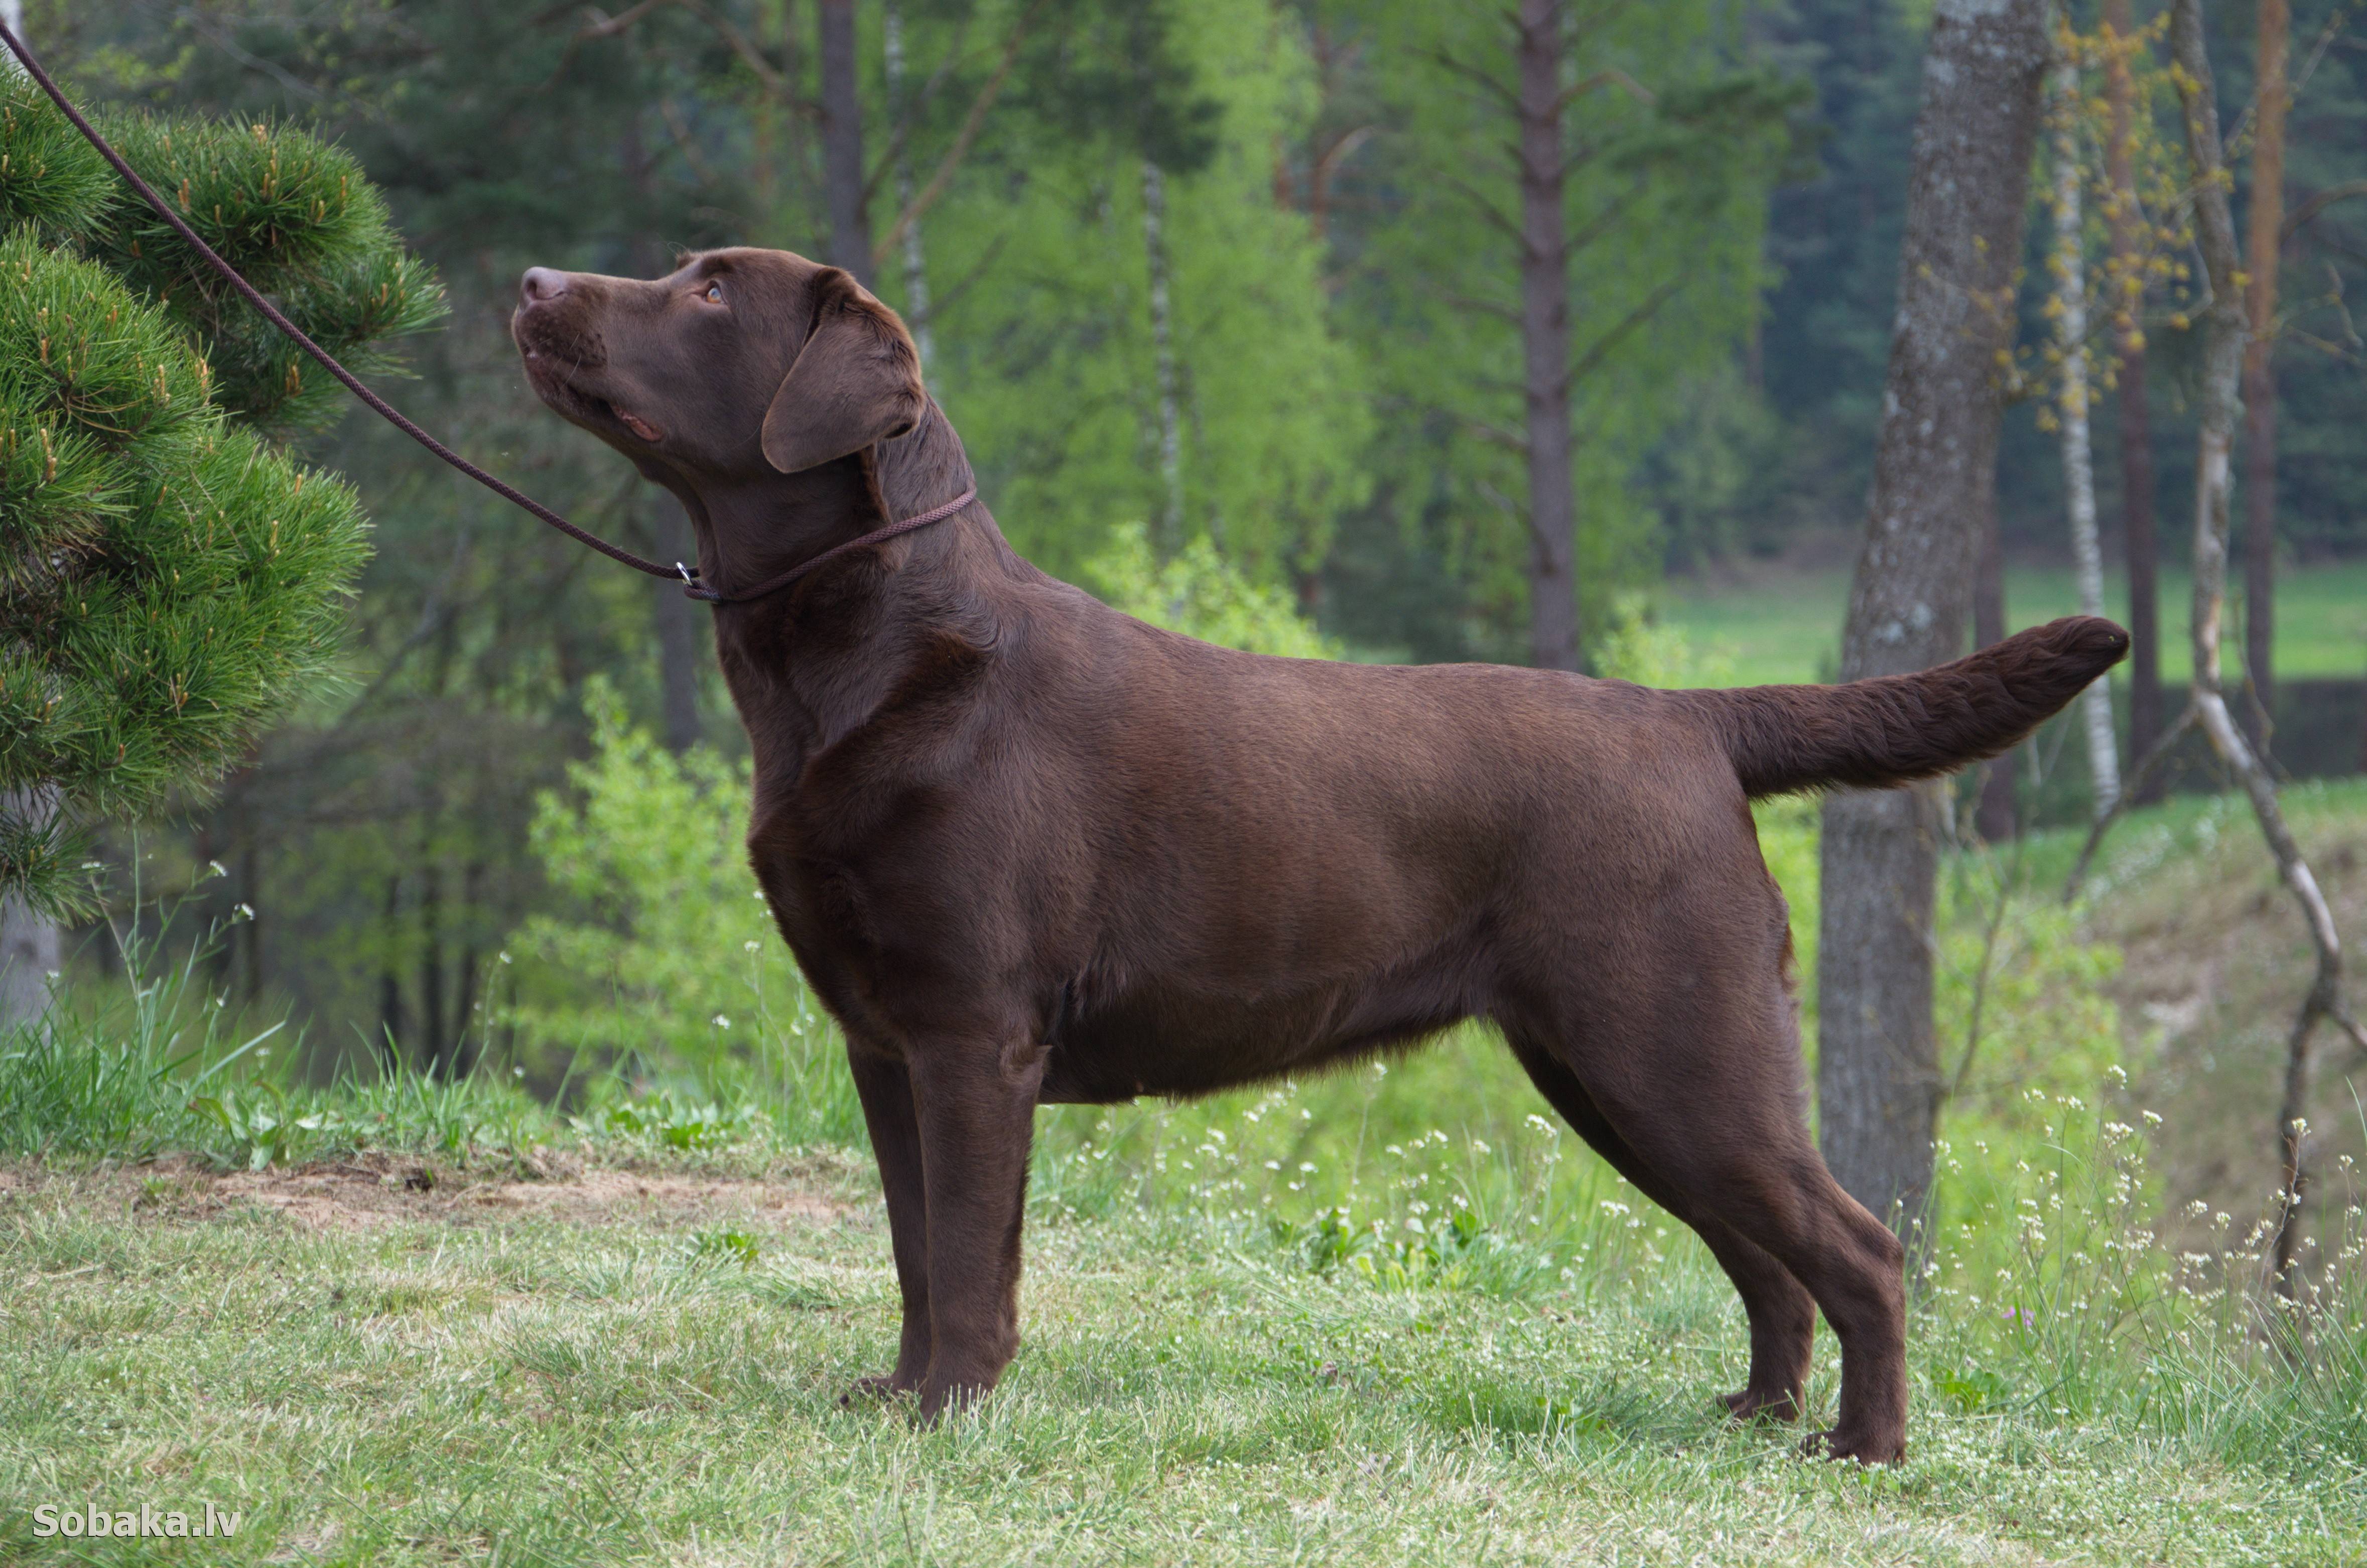 Лабрадор ретривер собака. описание, особенности, уход и цена лабрадора ретривера | животный мир